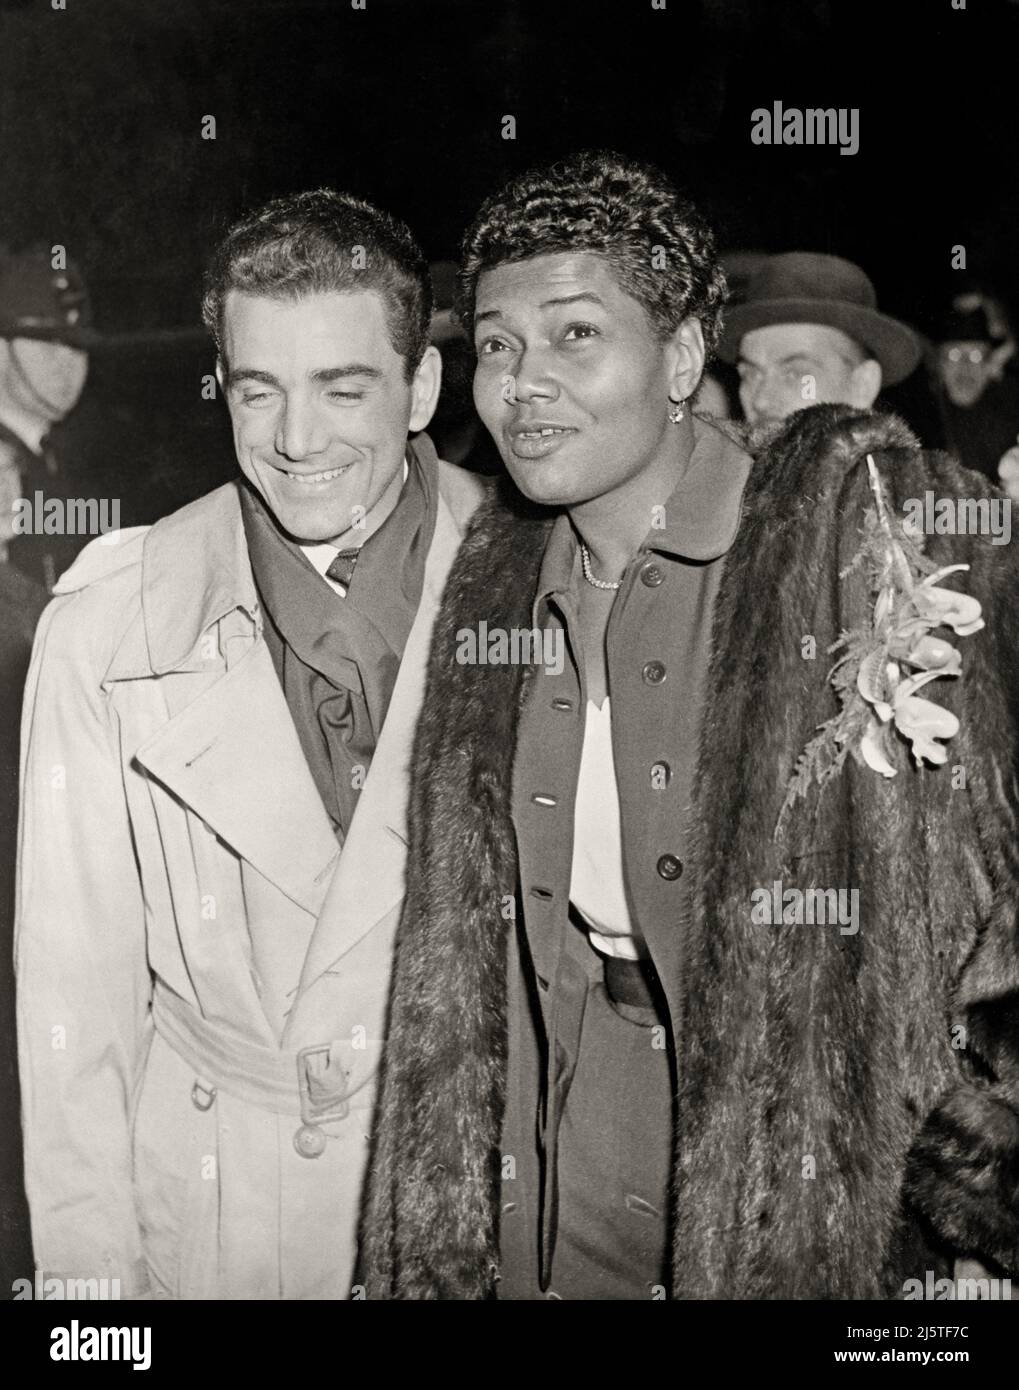 El baterista Louis Bellson Jr. Y la cantante Pearl Bailey después de su ceremonia de boda en Londres. 19 de noviembre de 1952. Imagen de copia negativa de 4 x 5 pulgadas. Foto de stock